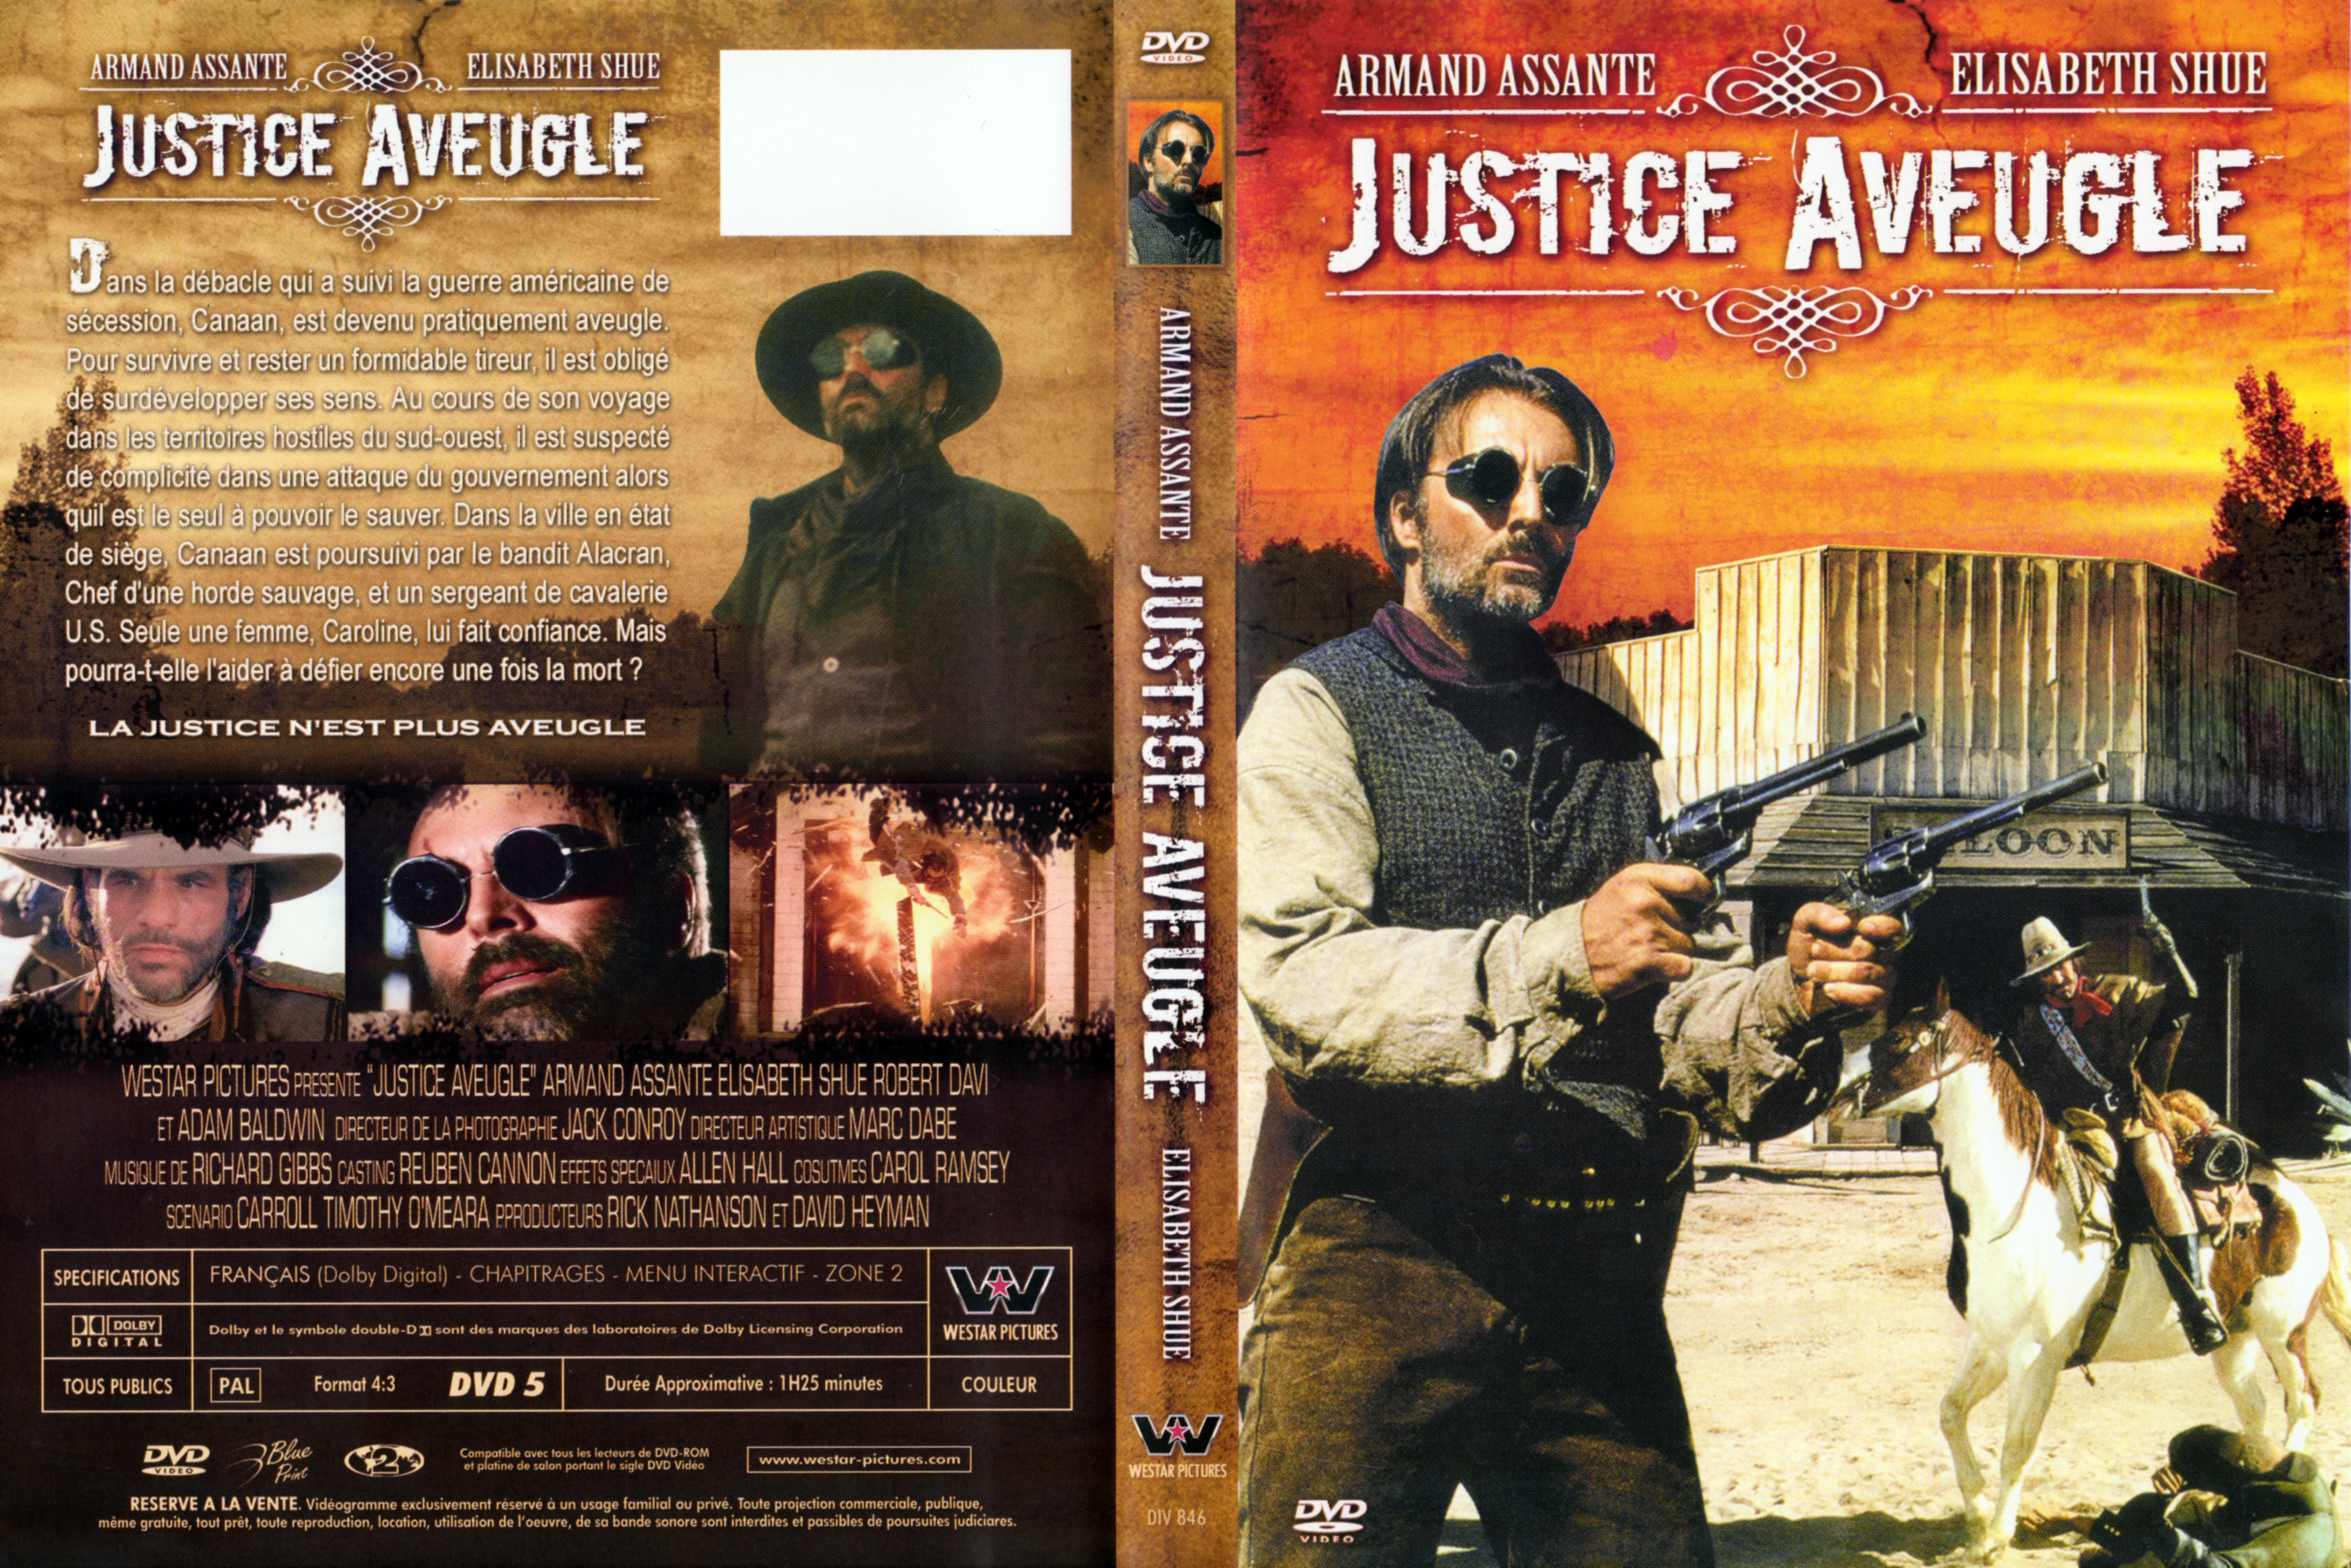 Jaquette DVD Justice aveugle